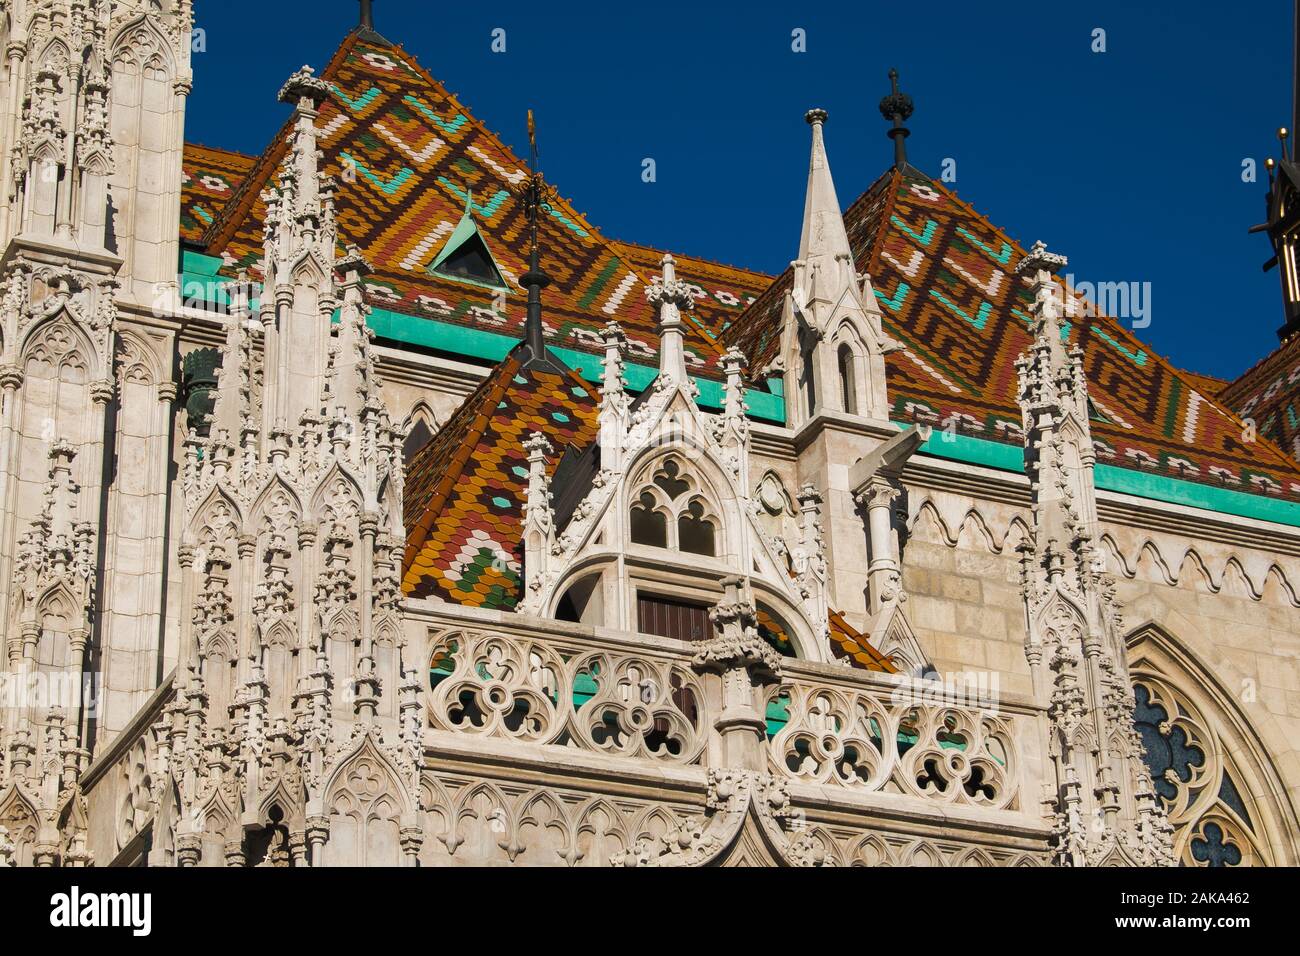 Dachdetails der katholischen Kirche St. Matthias in Budapest, Ungarn Stockfoto